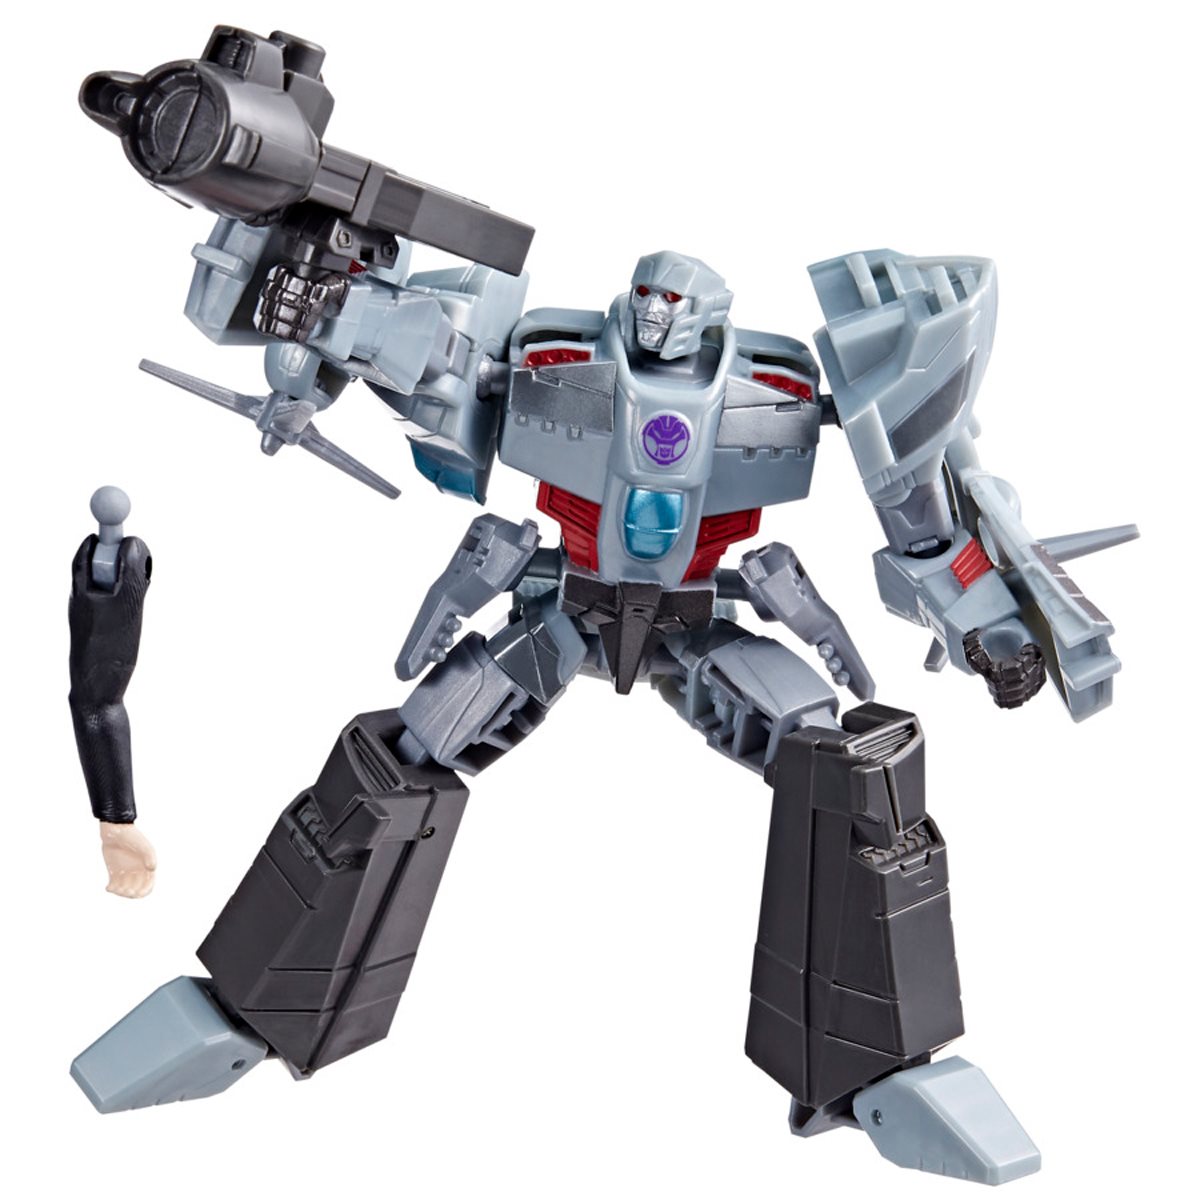 Chào đón thành viên mới trong gia đình Transformers - Earthspark Deluxe, chiến binh độc lập và mạnh mẽ nhất đến thời điểm hiện tại. Qua những bức ảnh đầy chi tiết và chất lượng này, bạn sẽ chỉ muốn sở hữu được một chiếc robot tương tự cho riêng mình!